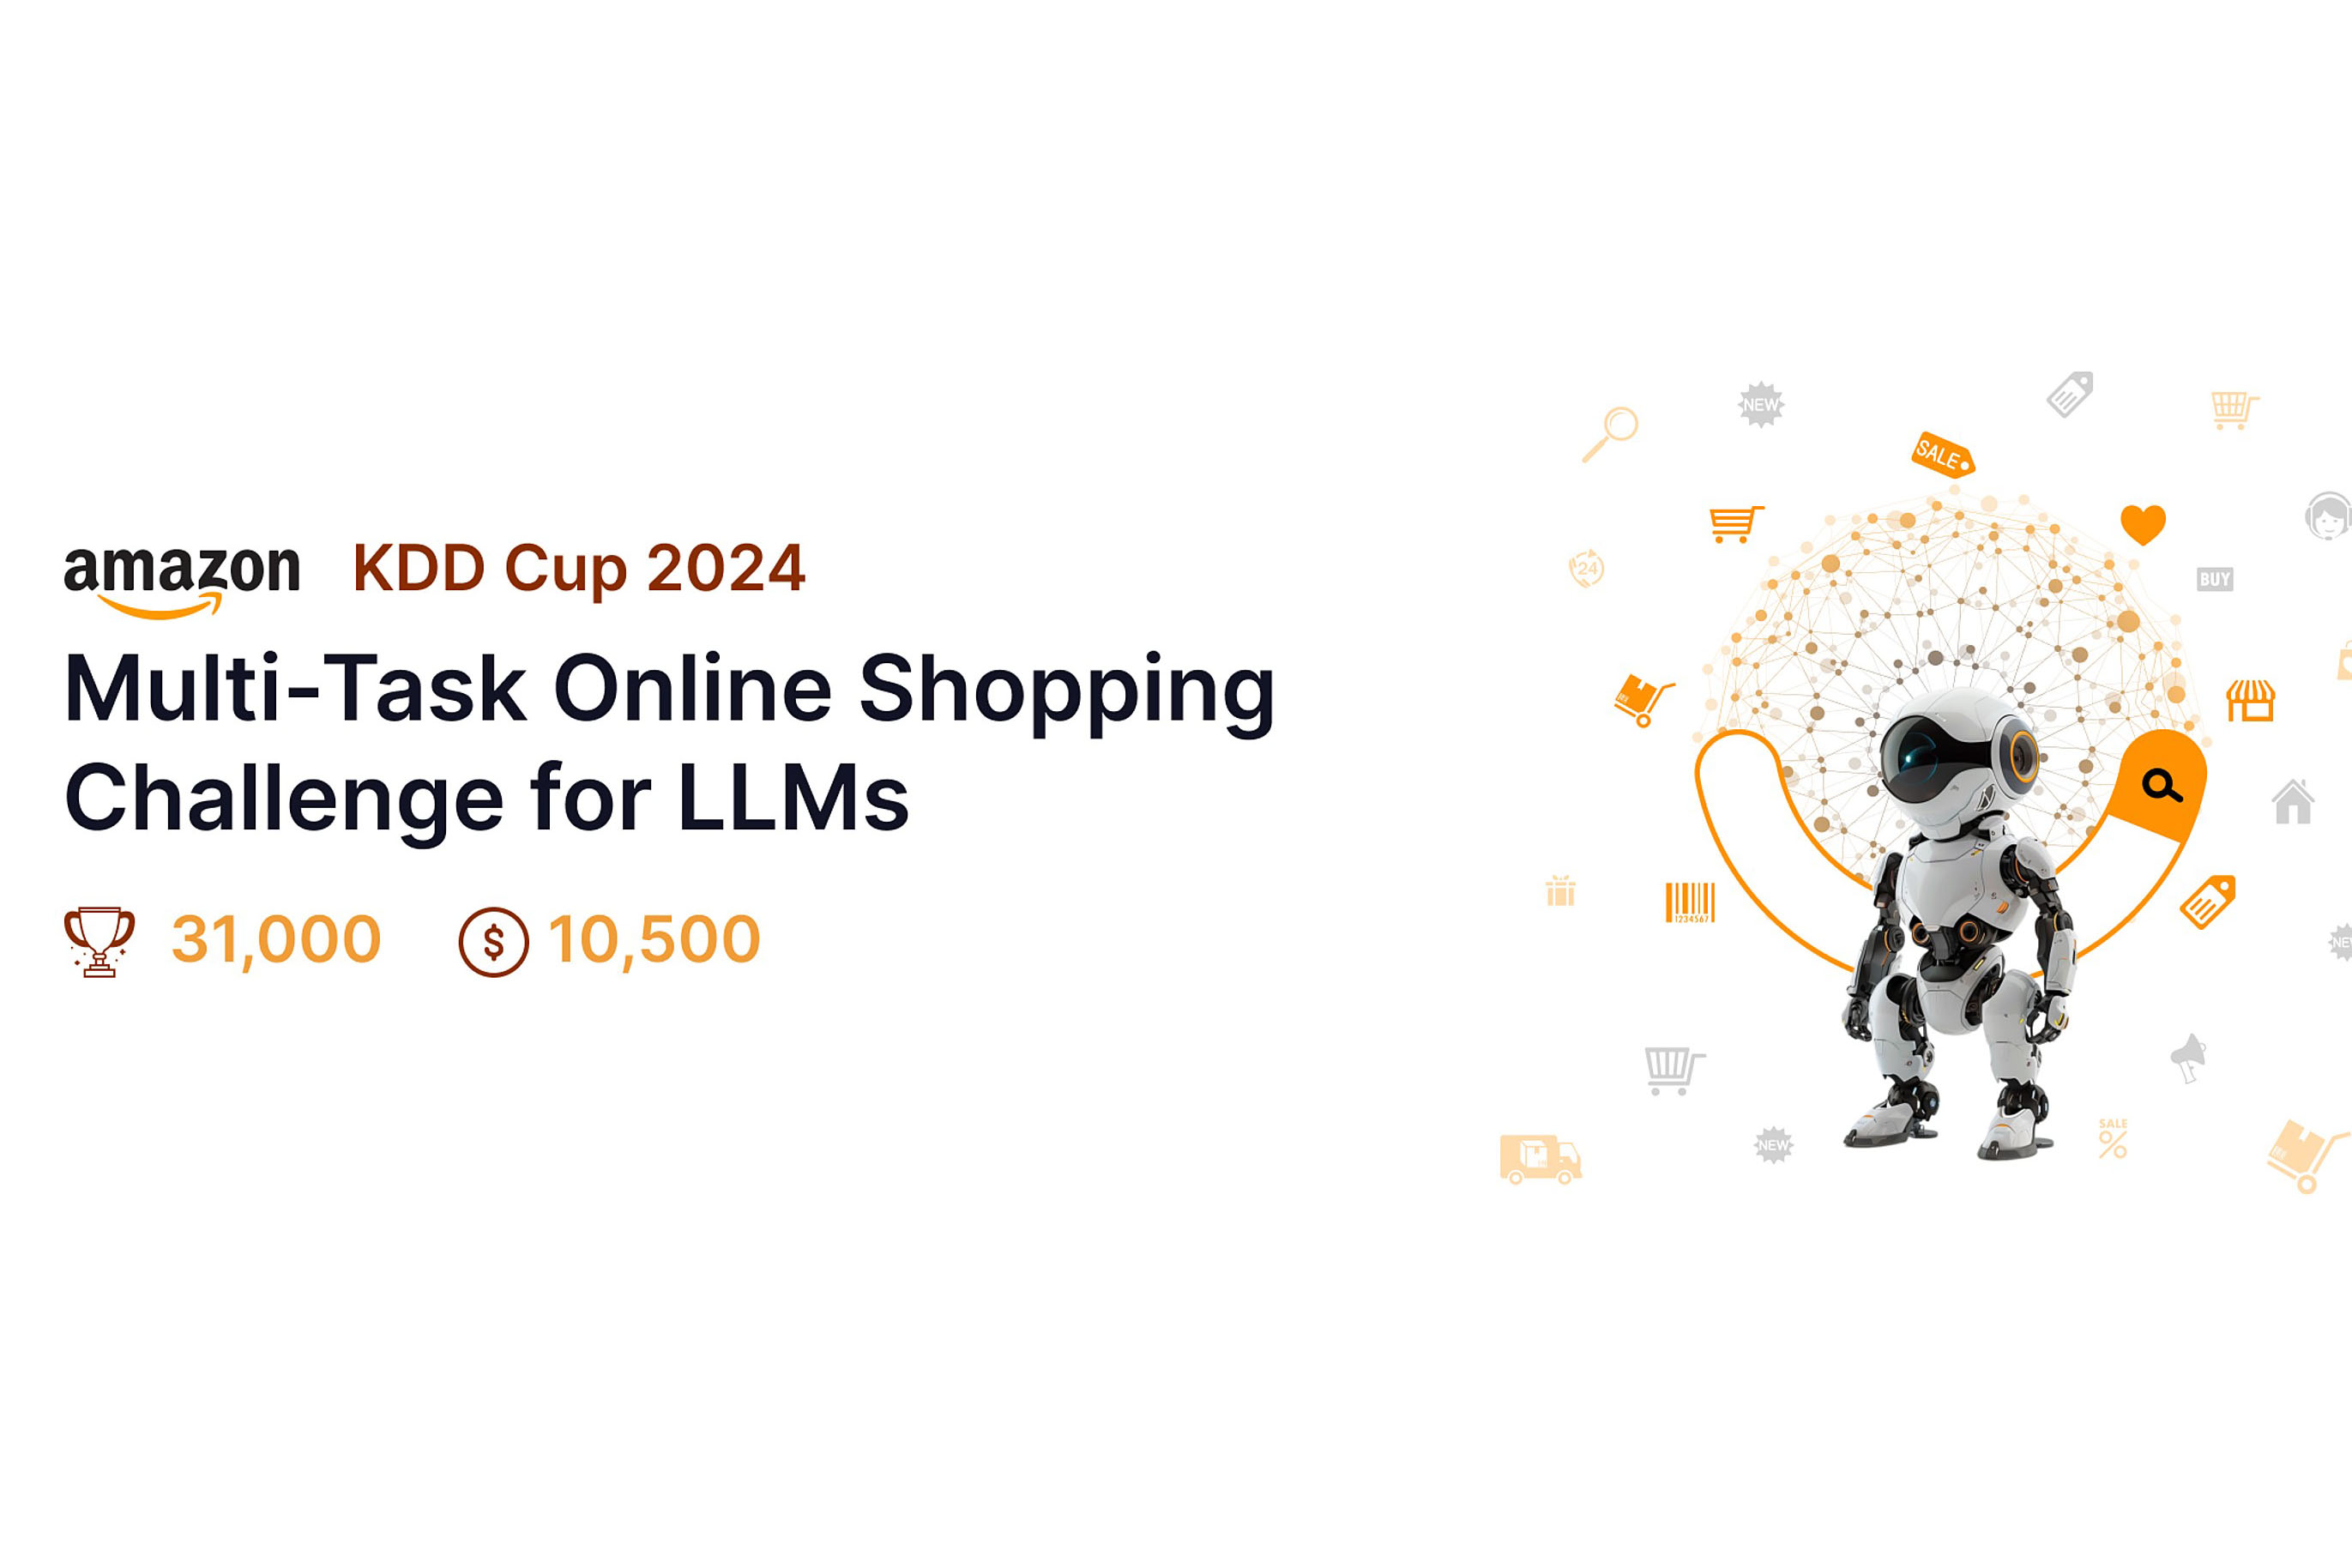 赛事分享 Amazon KDD Cup 2024: Multi-Task Online Shopping Challenge for LLMs